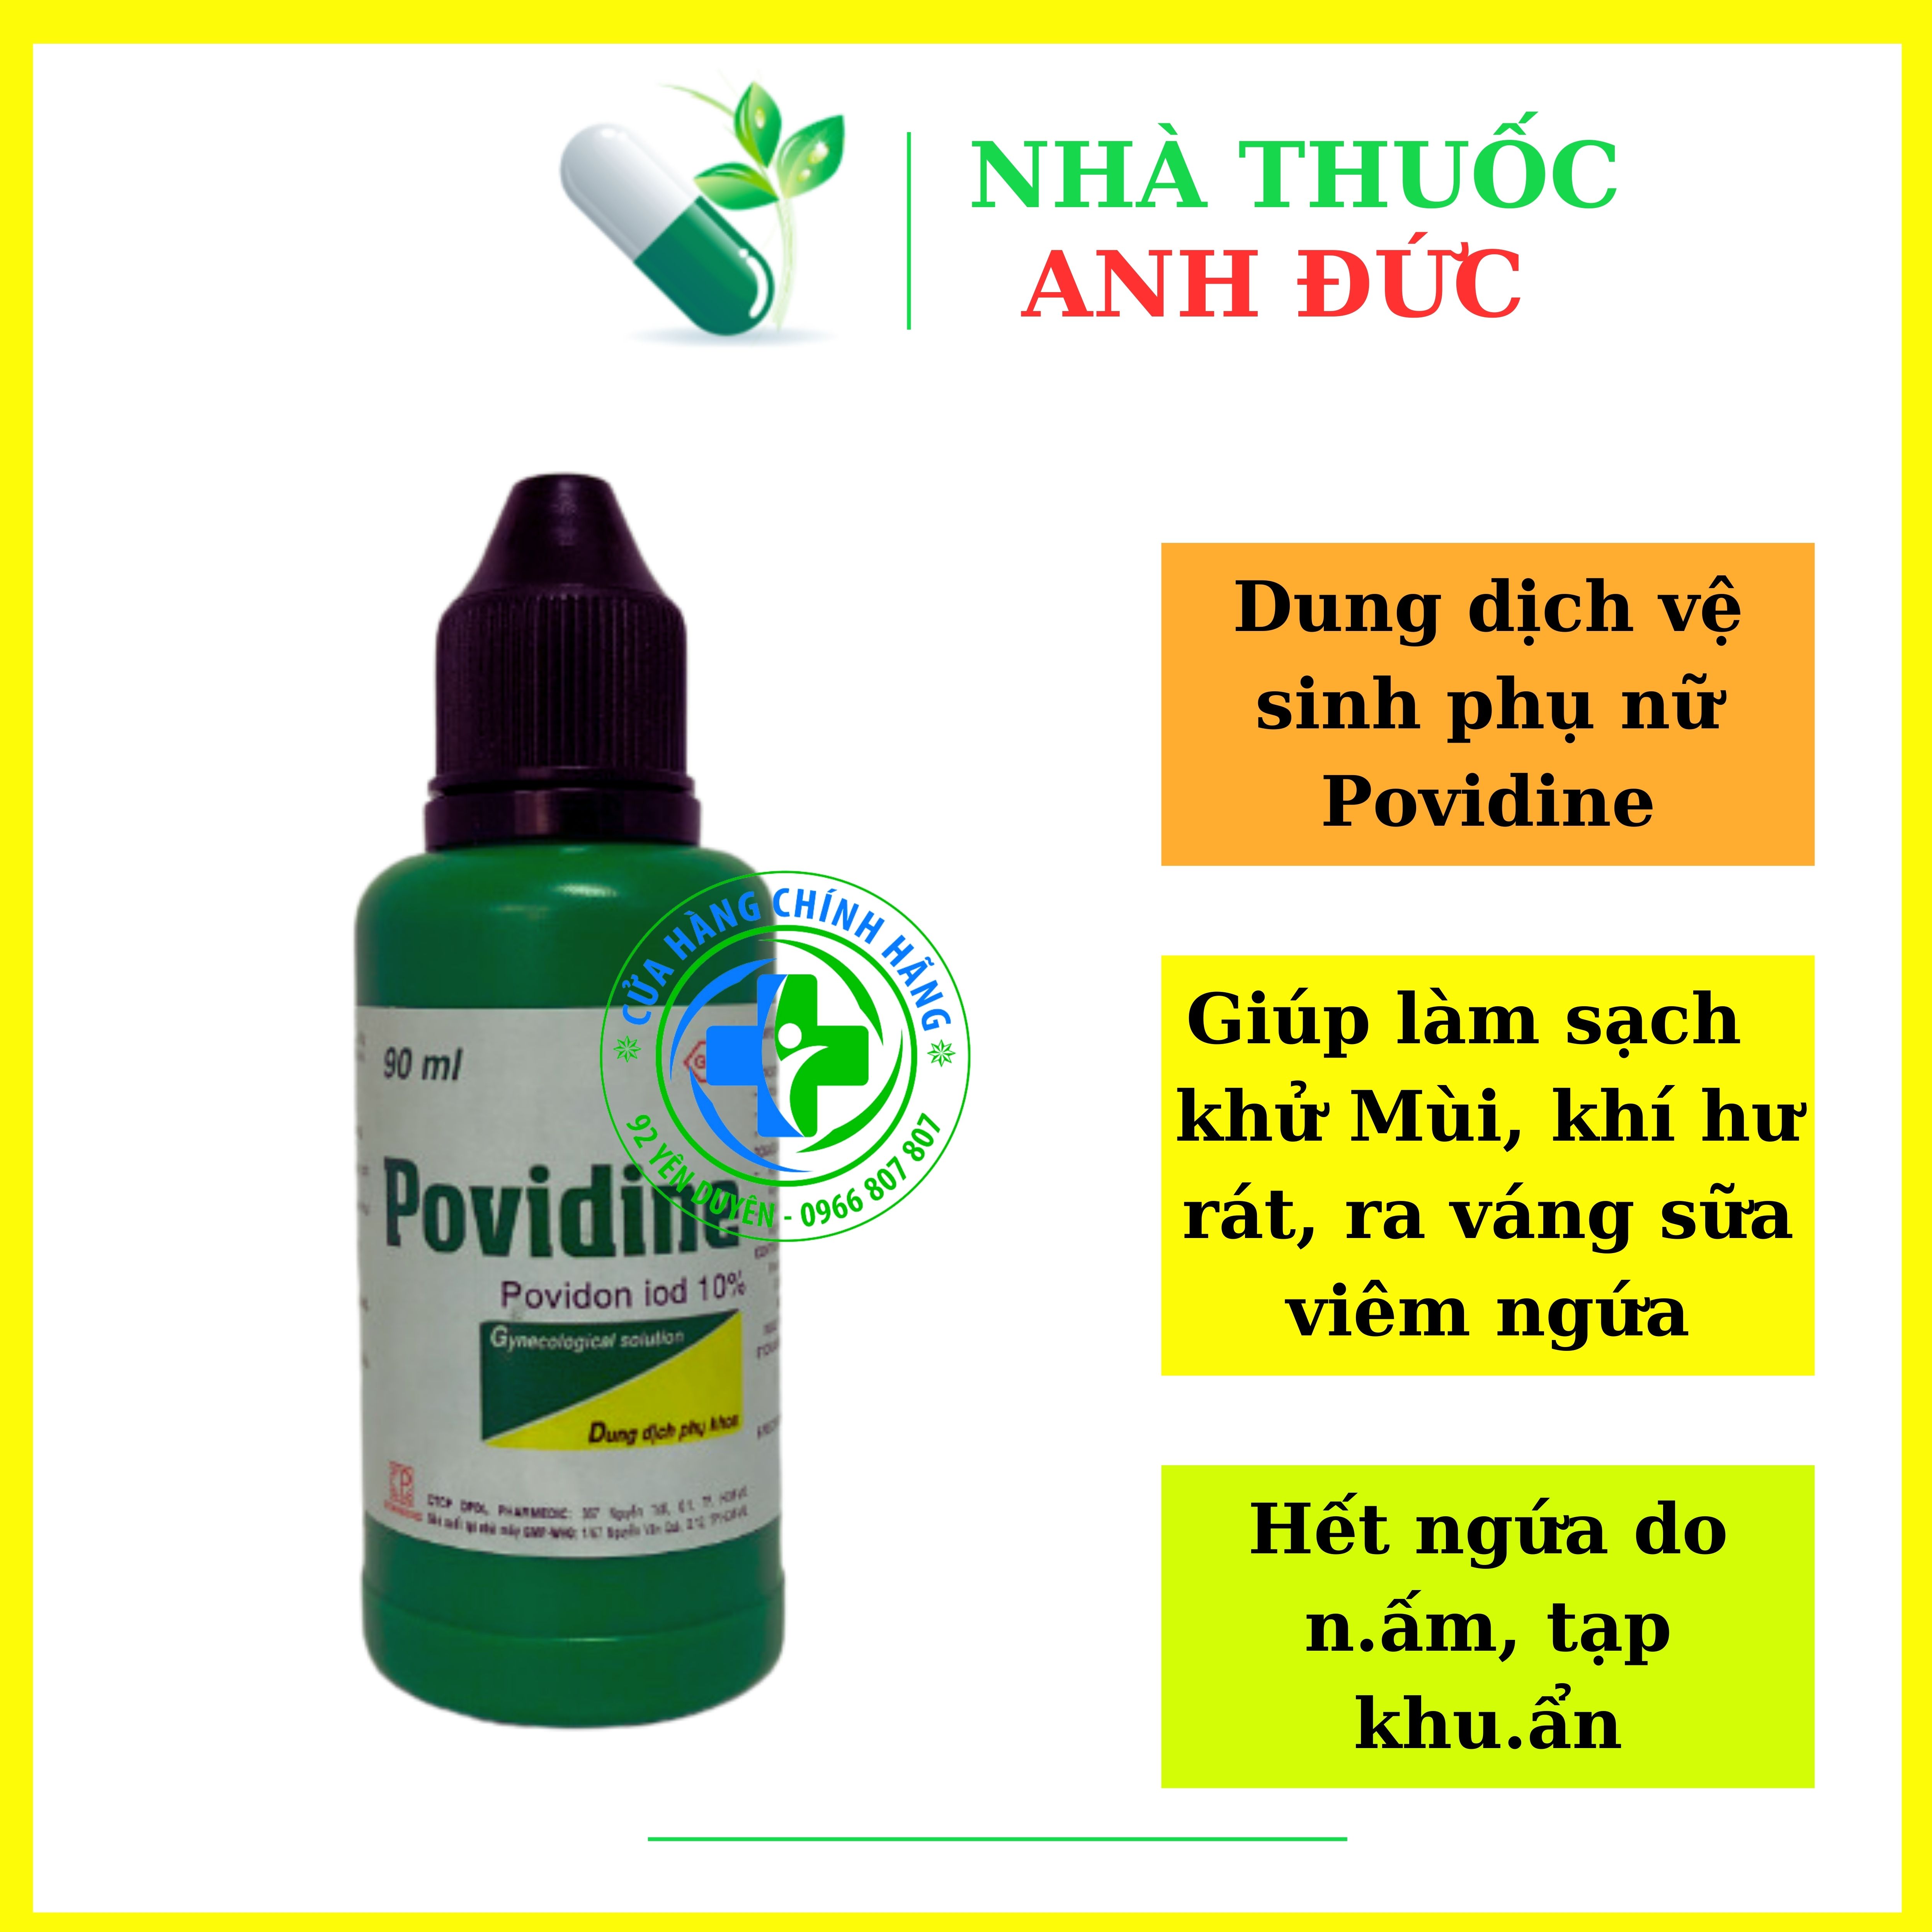 Dung dịch vệ sinh phụ nữ Povidine giúp giảm viêm, nấm ngứa